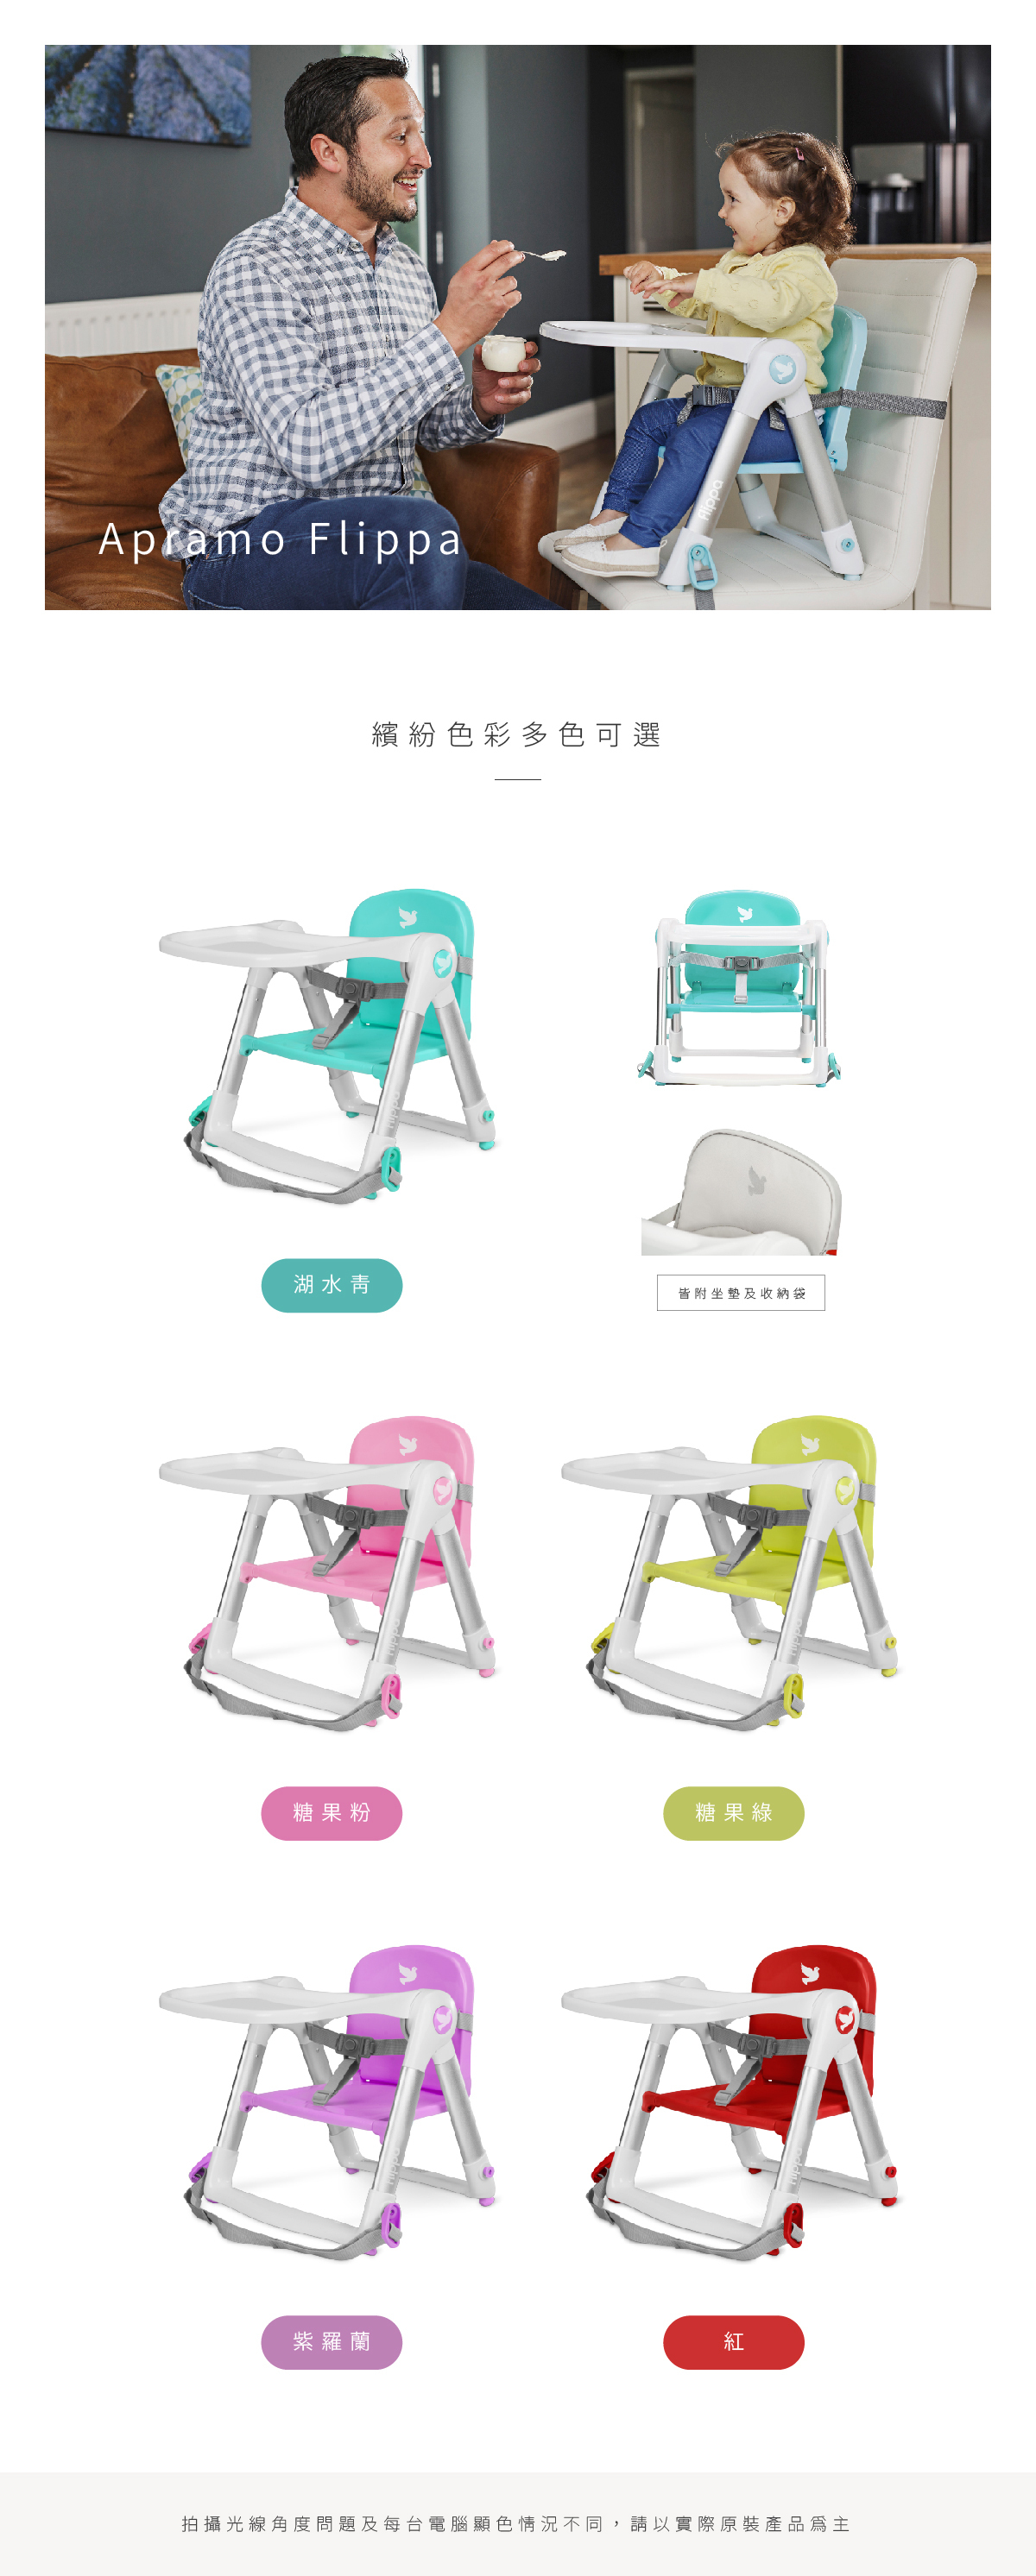 【英國Apramo】Flippa classic 旅行餐椅／可攜式兩用兒童餐椅－5色可選